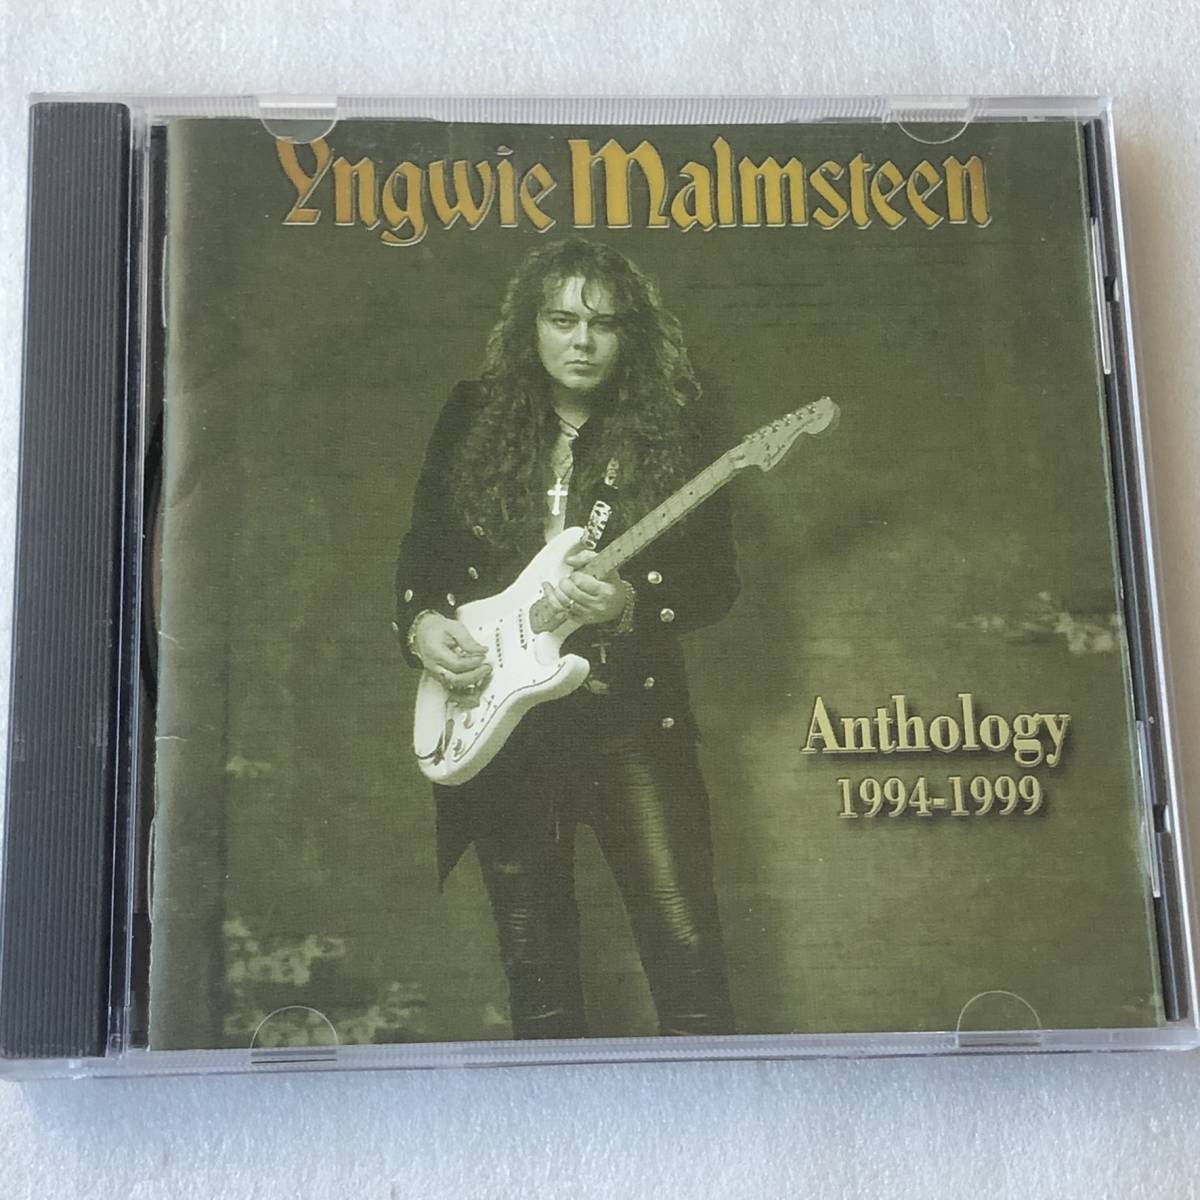 中古CD Yngwie Malmsteen イングヴェイ・マルムスティーン/Anthology 1994-1999 ベスト盤(2000年) スウェーデン産HR/HM,ネオクラ系_画像1